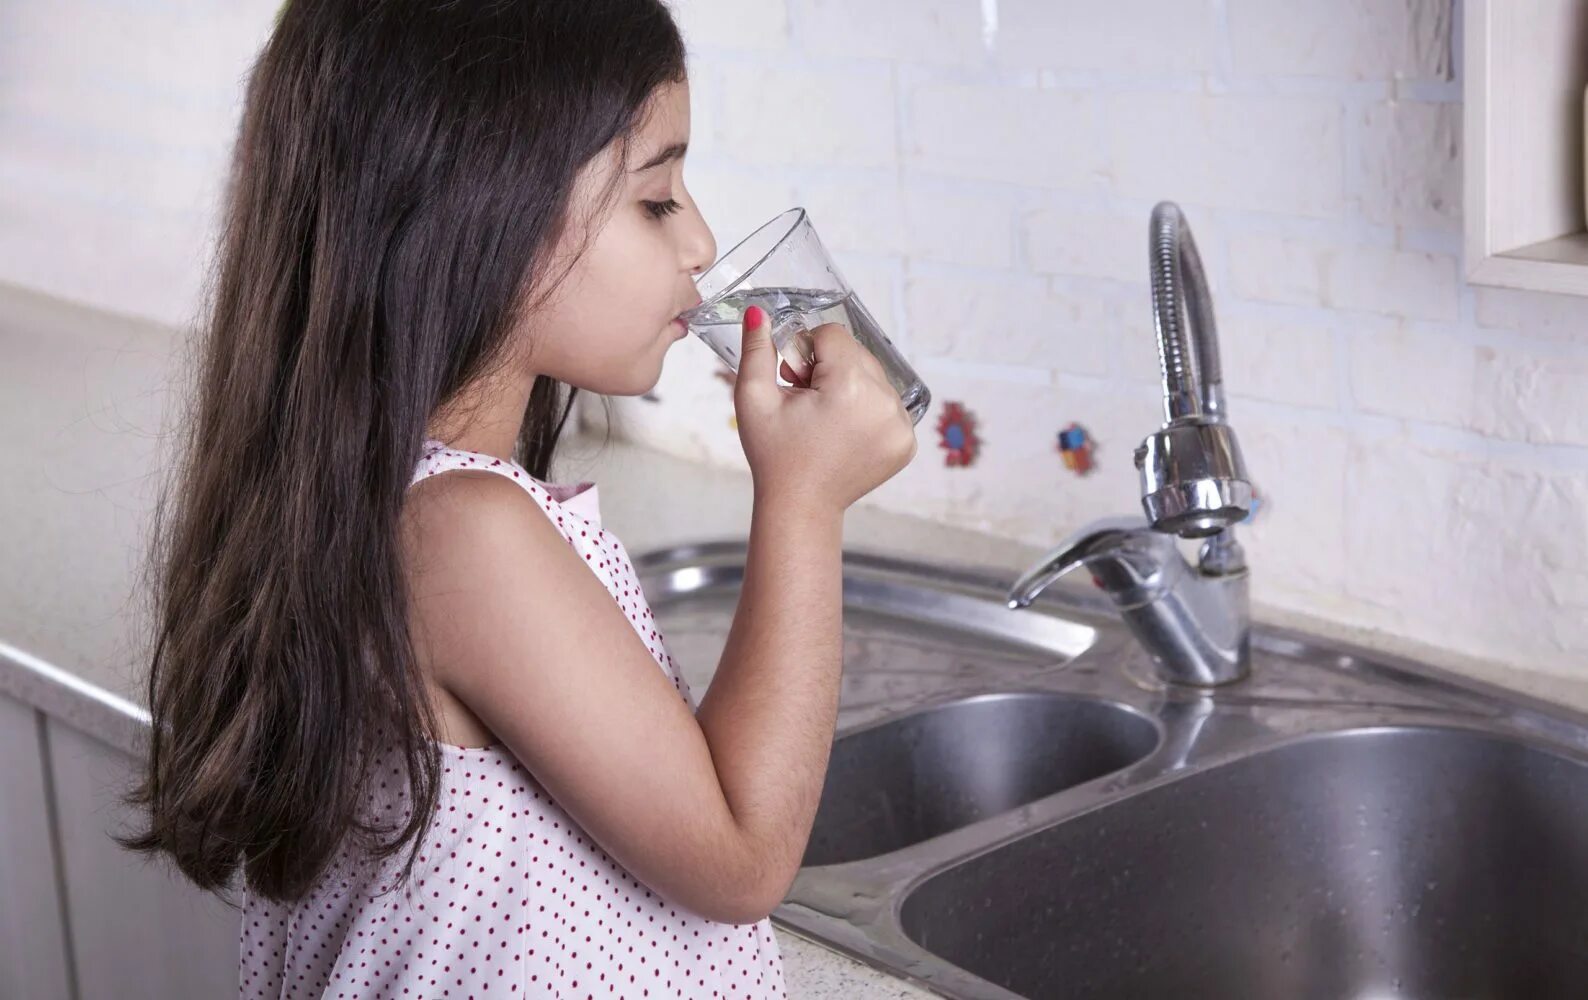 Жадно пьют воду. Девушка с питьевой водой. Человек пьет воду. Питье воды из под крана. Девушка со стаканом воды.